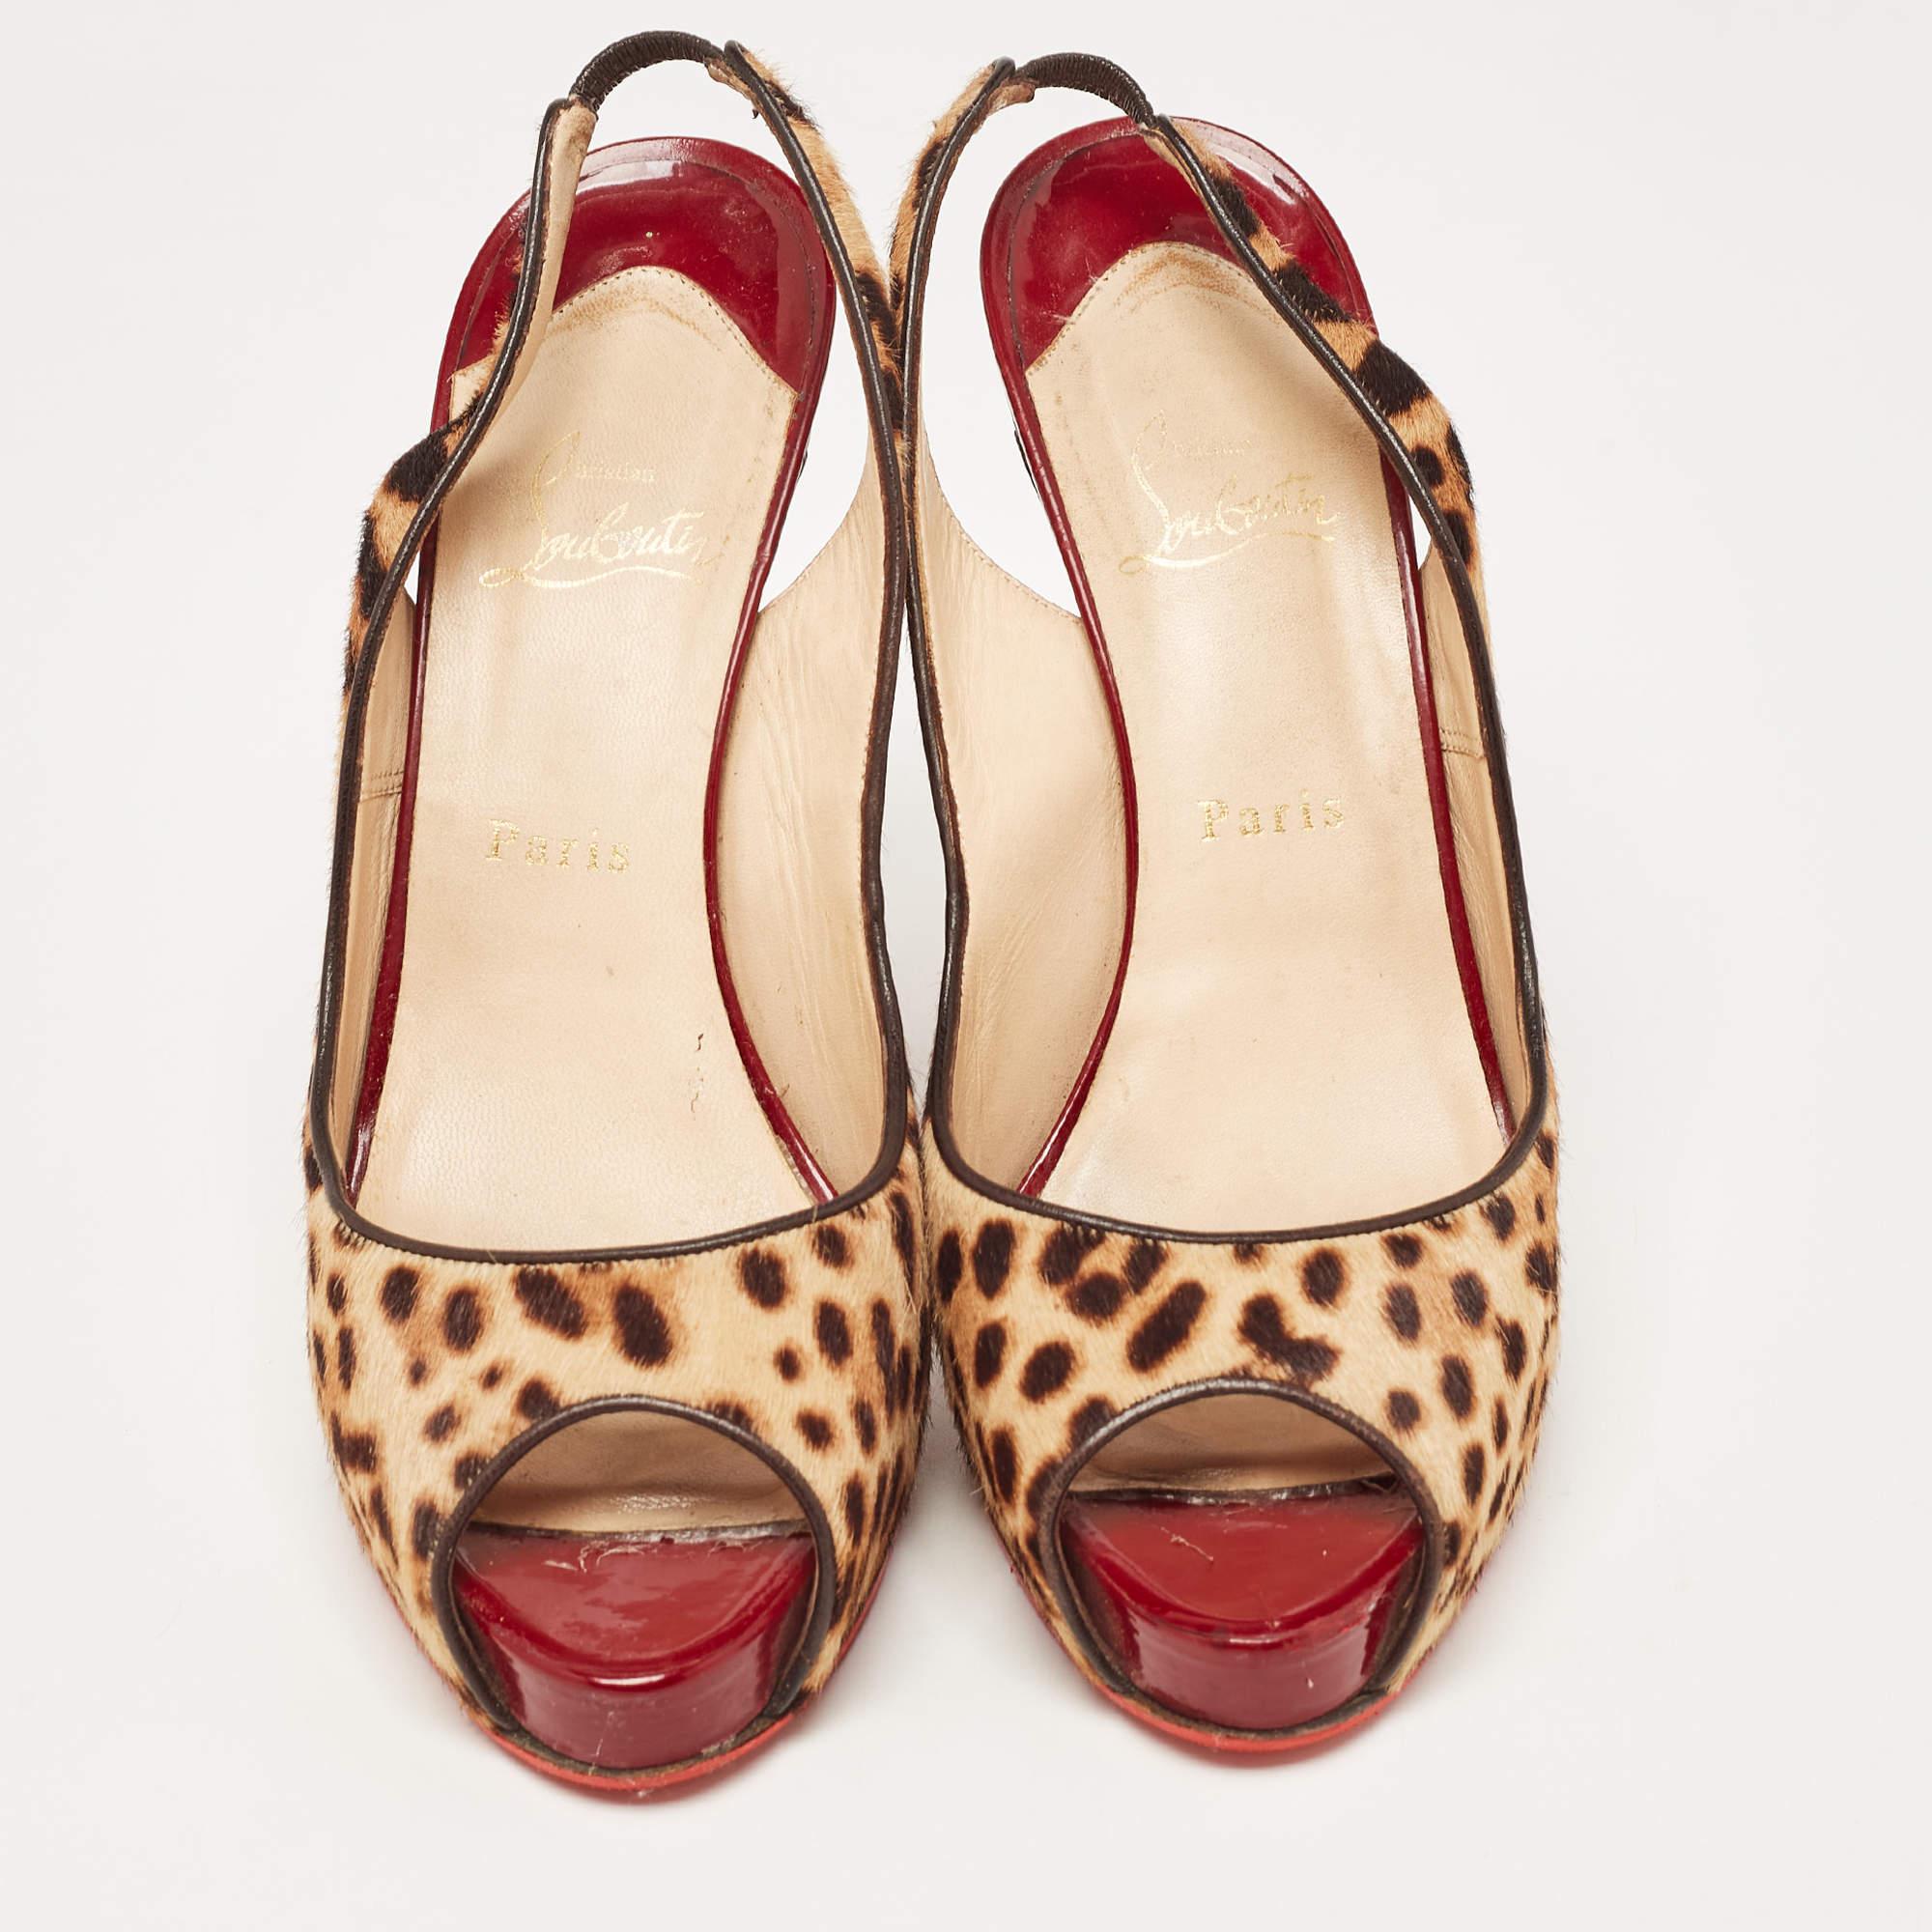 Estos zapatos de salón de Christian Louboutin están pensados para que te encanten. Maravillosamente elaborados y equilibrados sobre elegantes tacones, los zapatos de salón elevarán tus pies en una silueta deslumbrante.

Incluye
Funda guardapolvo